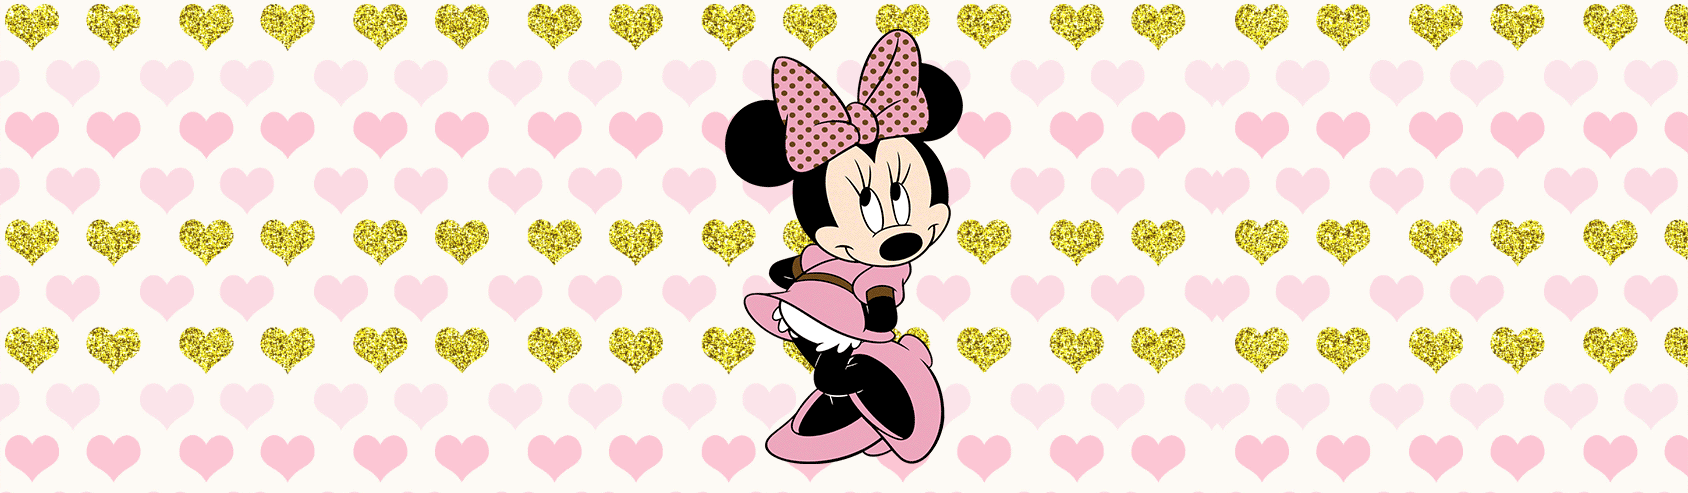 Minnie Mouse Rosa y Dorado - Decoraciones y Productos Personalizados en La Kika